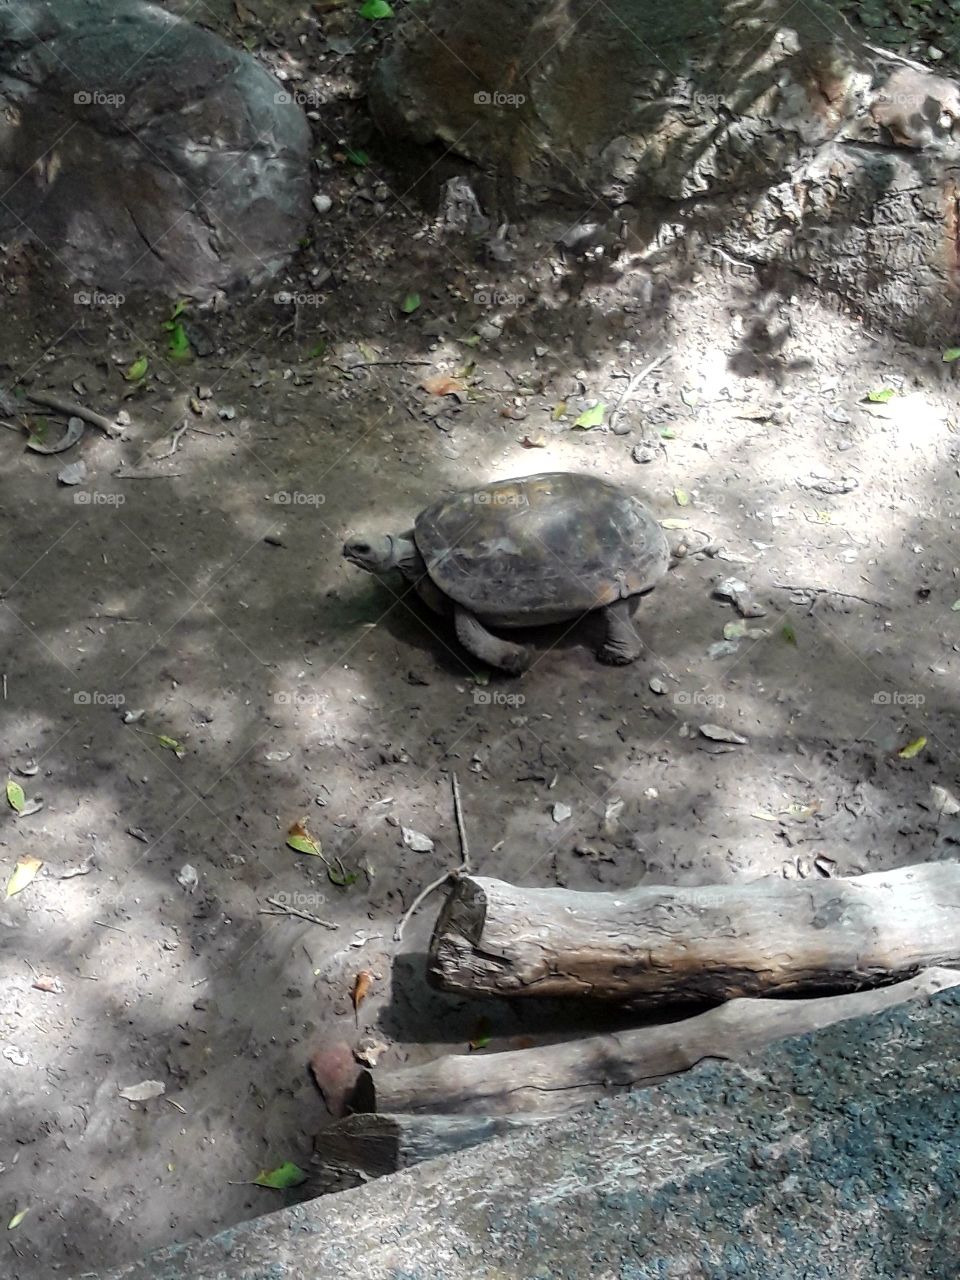 turtle